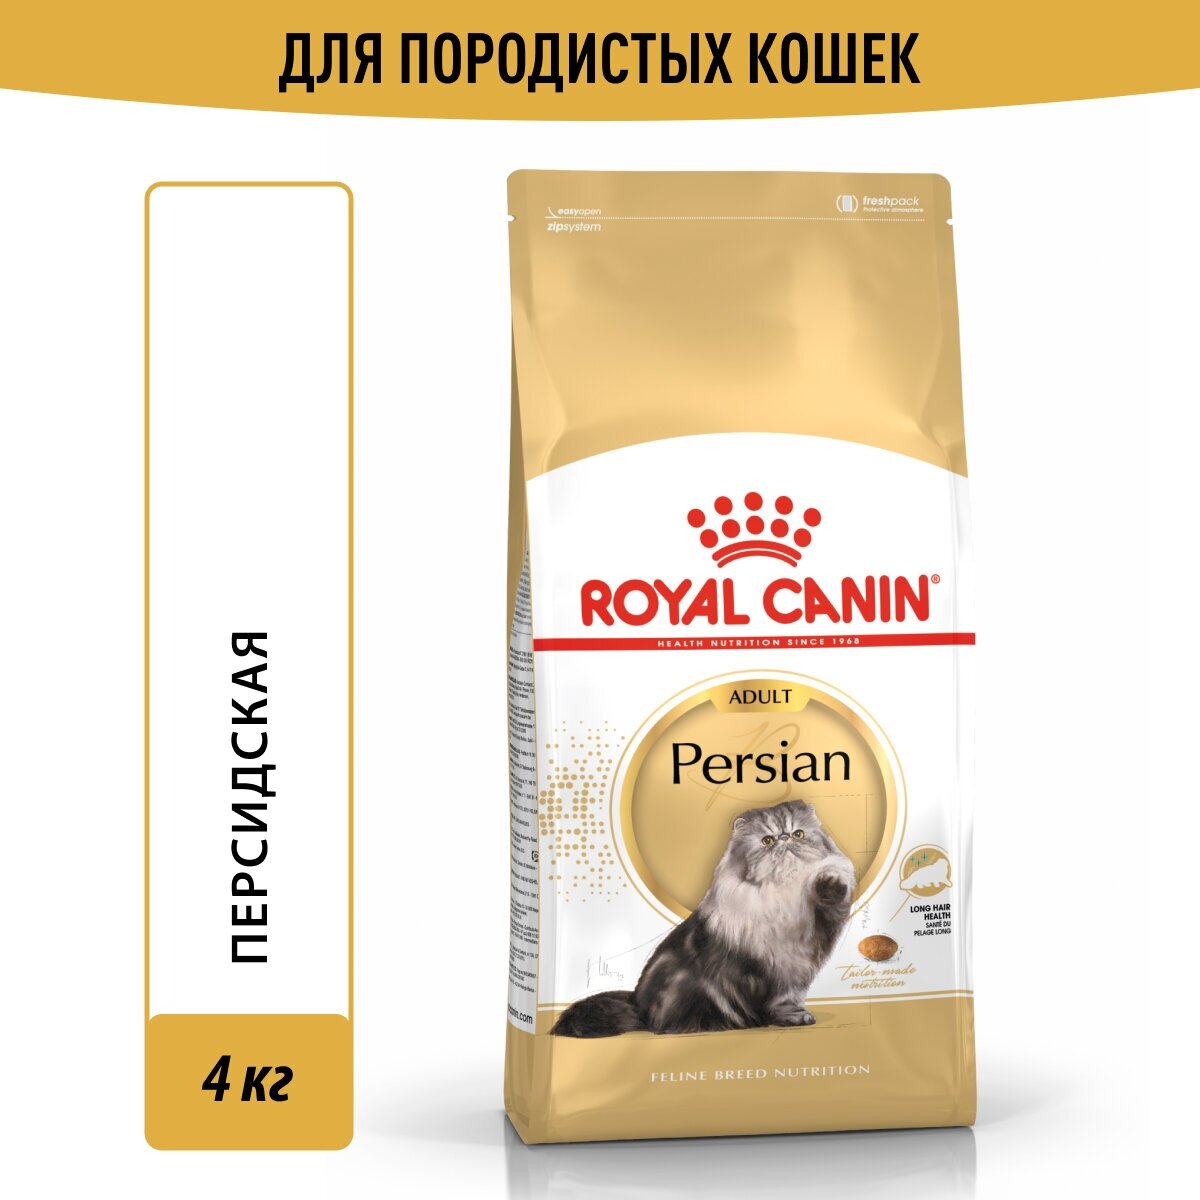 Сухой корм ROYAL CANIN PERSIAN ADULT для взрослых персидских кошек (4 кг)